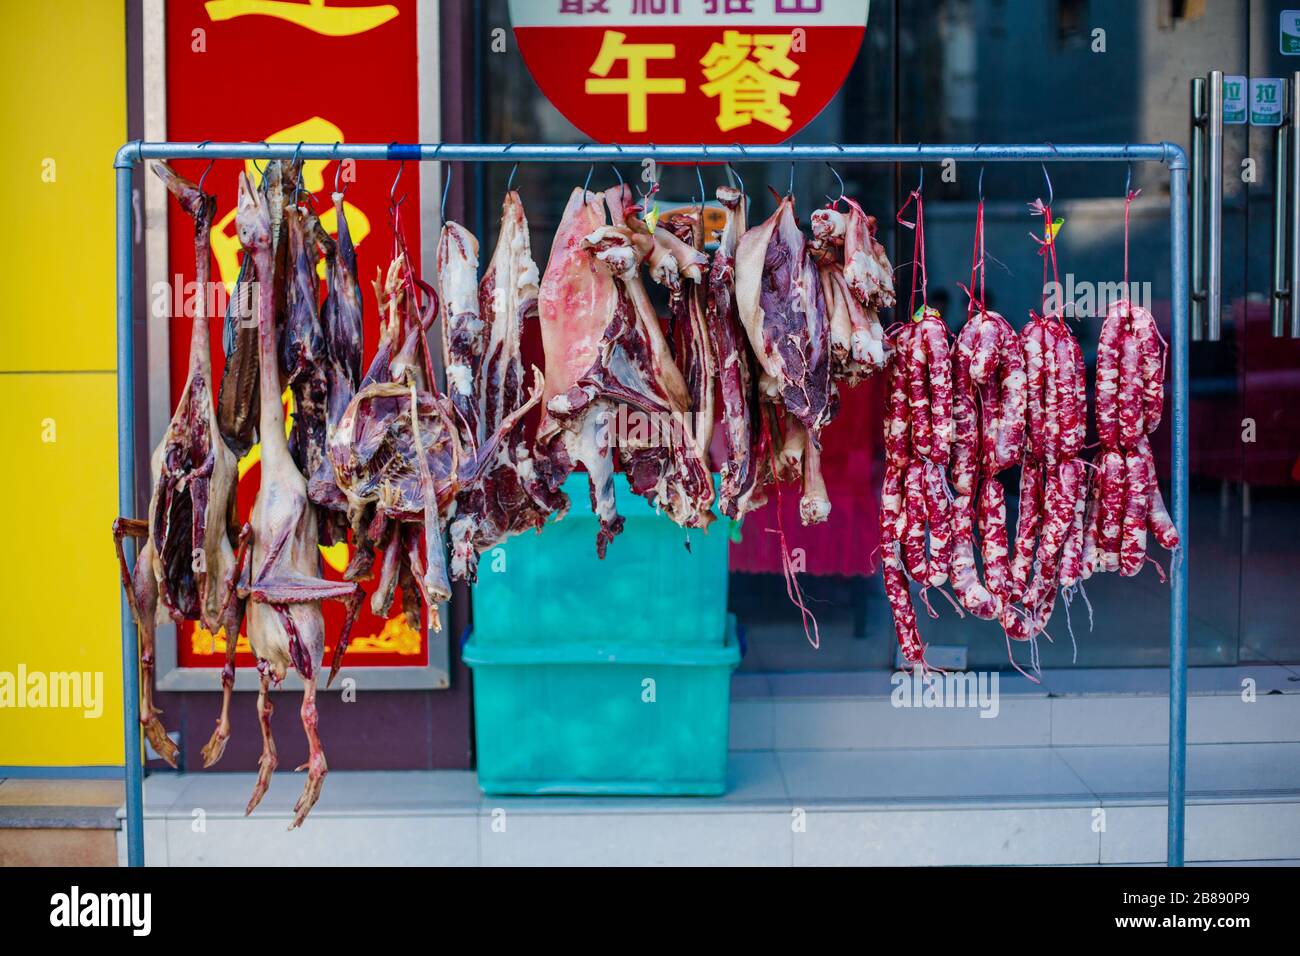 Eine Vielzahl von Tieren entkernt und hängte, um außerhalb einer Metzgerei in einem Hutong in China zu trocknen. Stockfoto